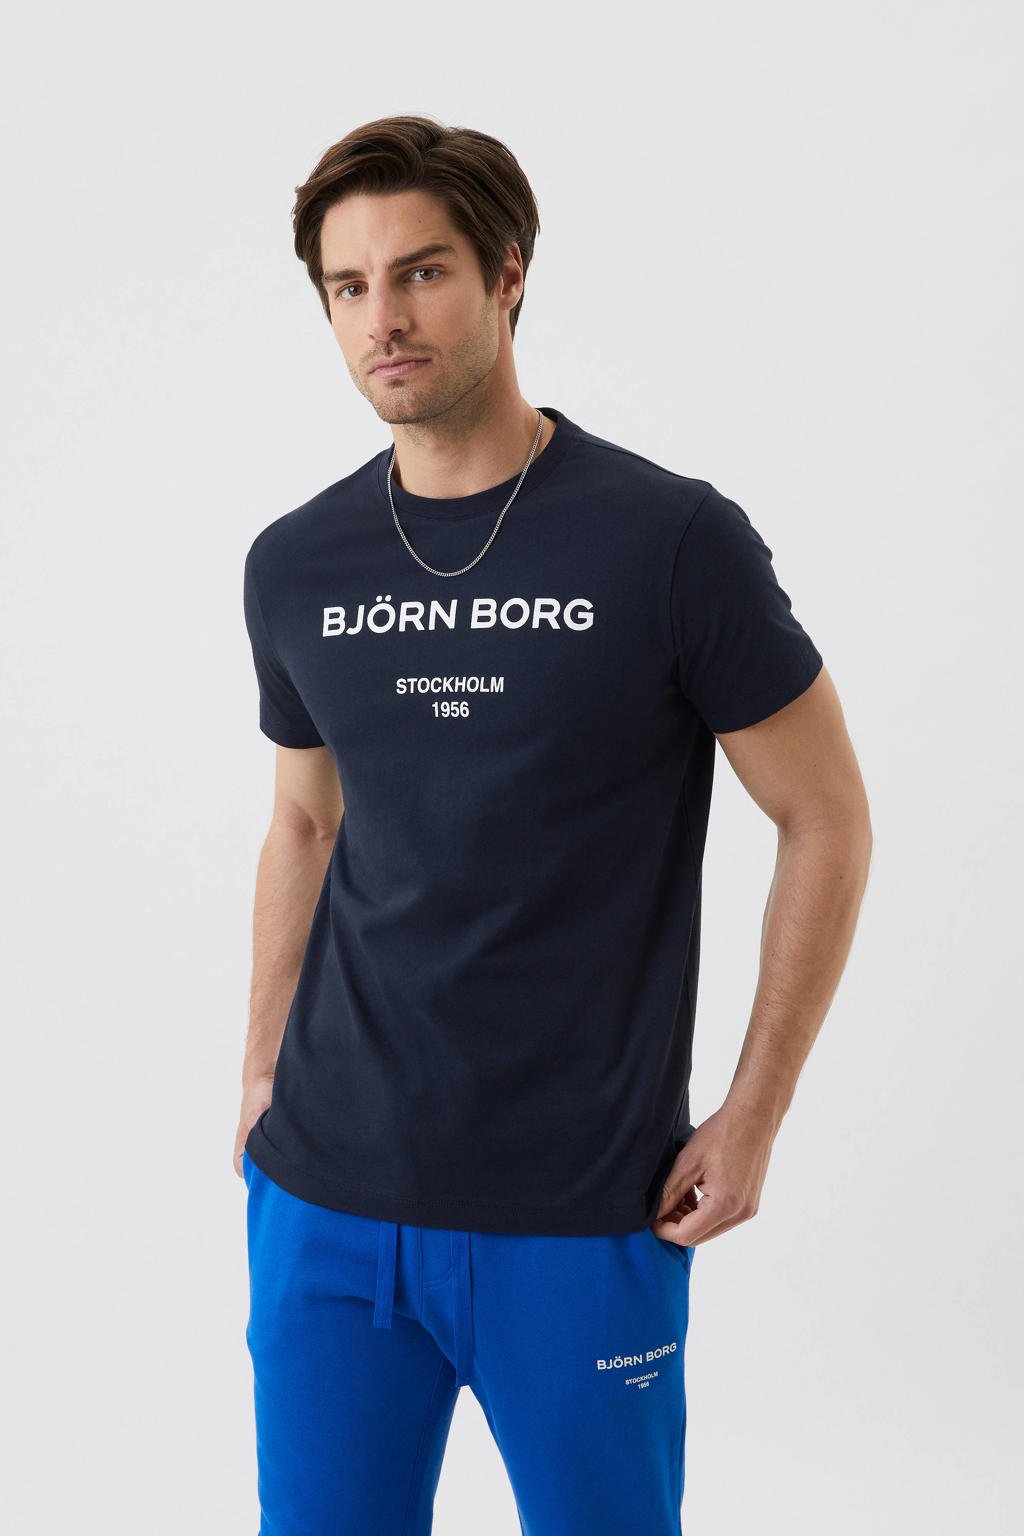 Blauwe heren Björn Borg T-shirt van biologisch katoen met printopdruk, korte mouwen en ronde hals